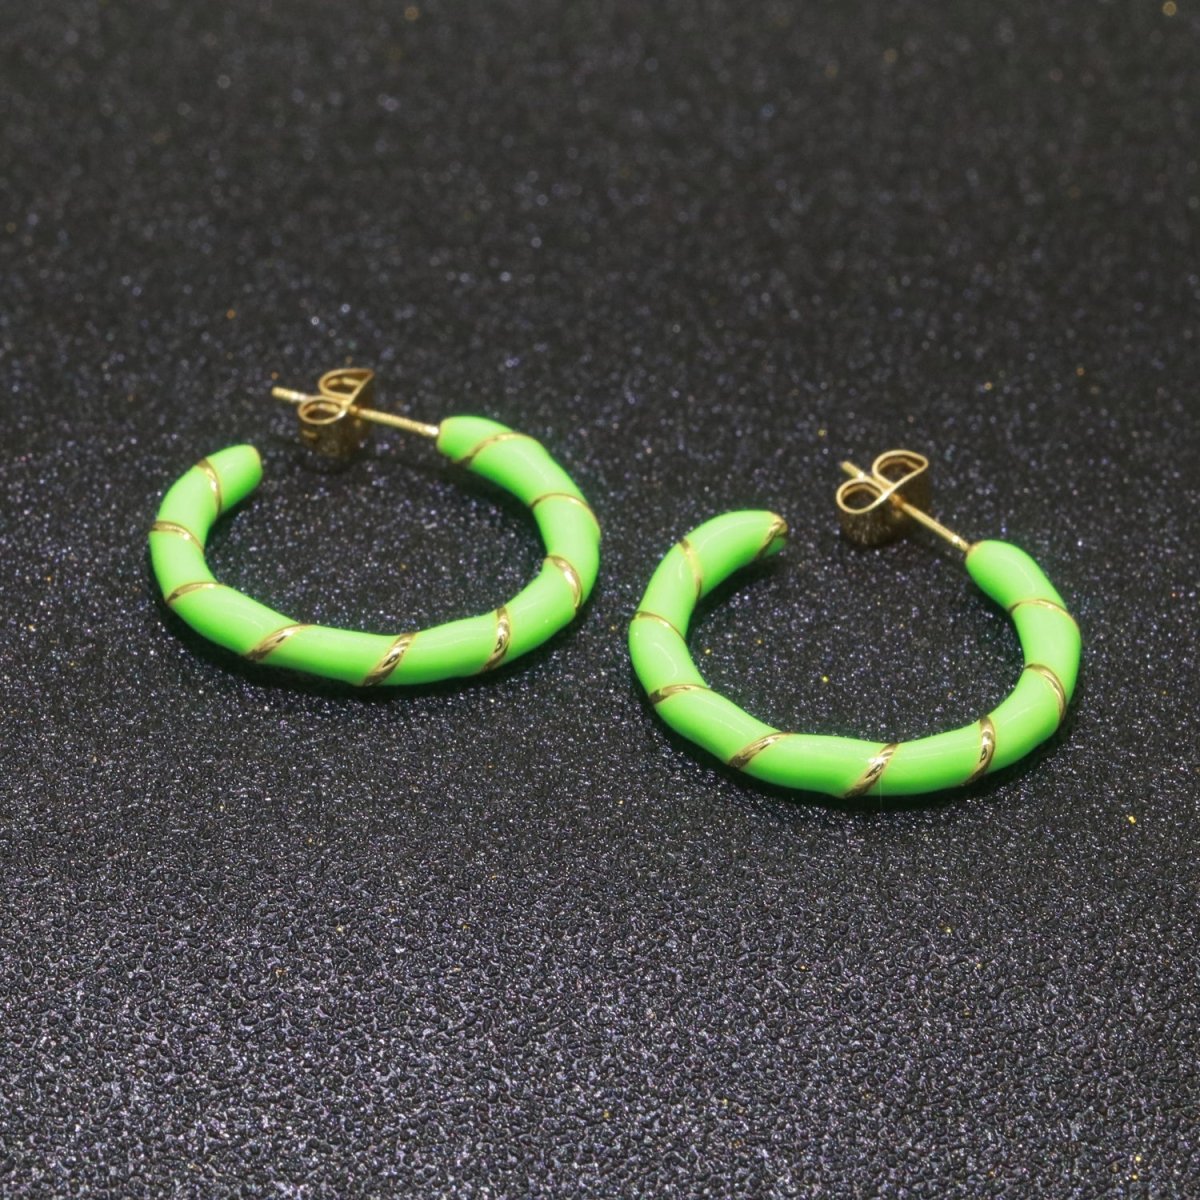 Green Enamel Hoop Earring with Gold Swirl 26mm Hoop earring Jewelry Gift T-004 - DLUXCA